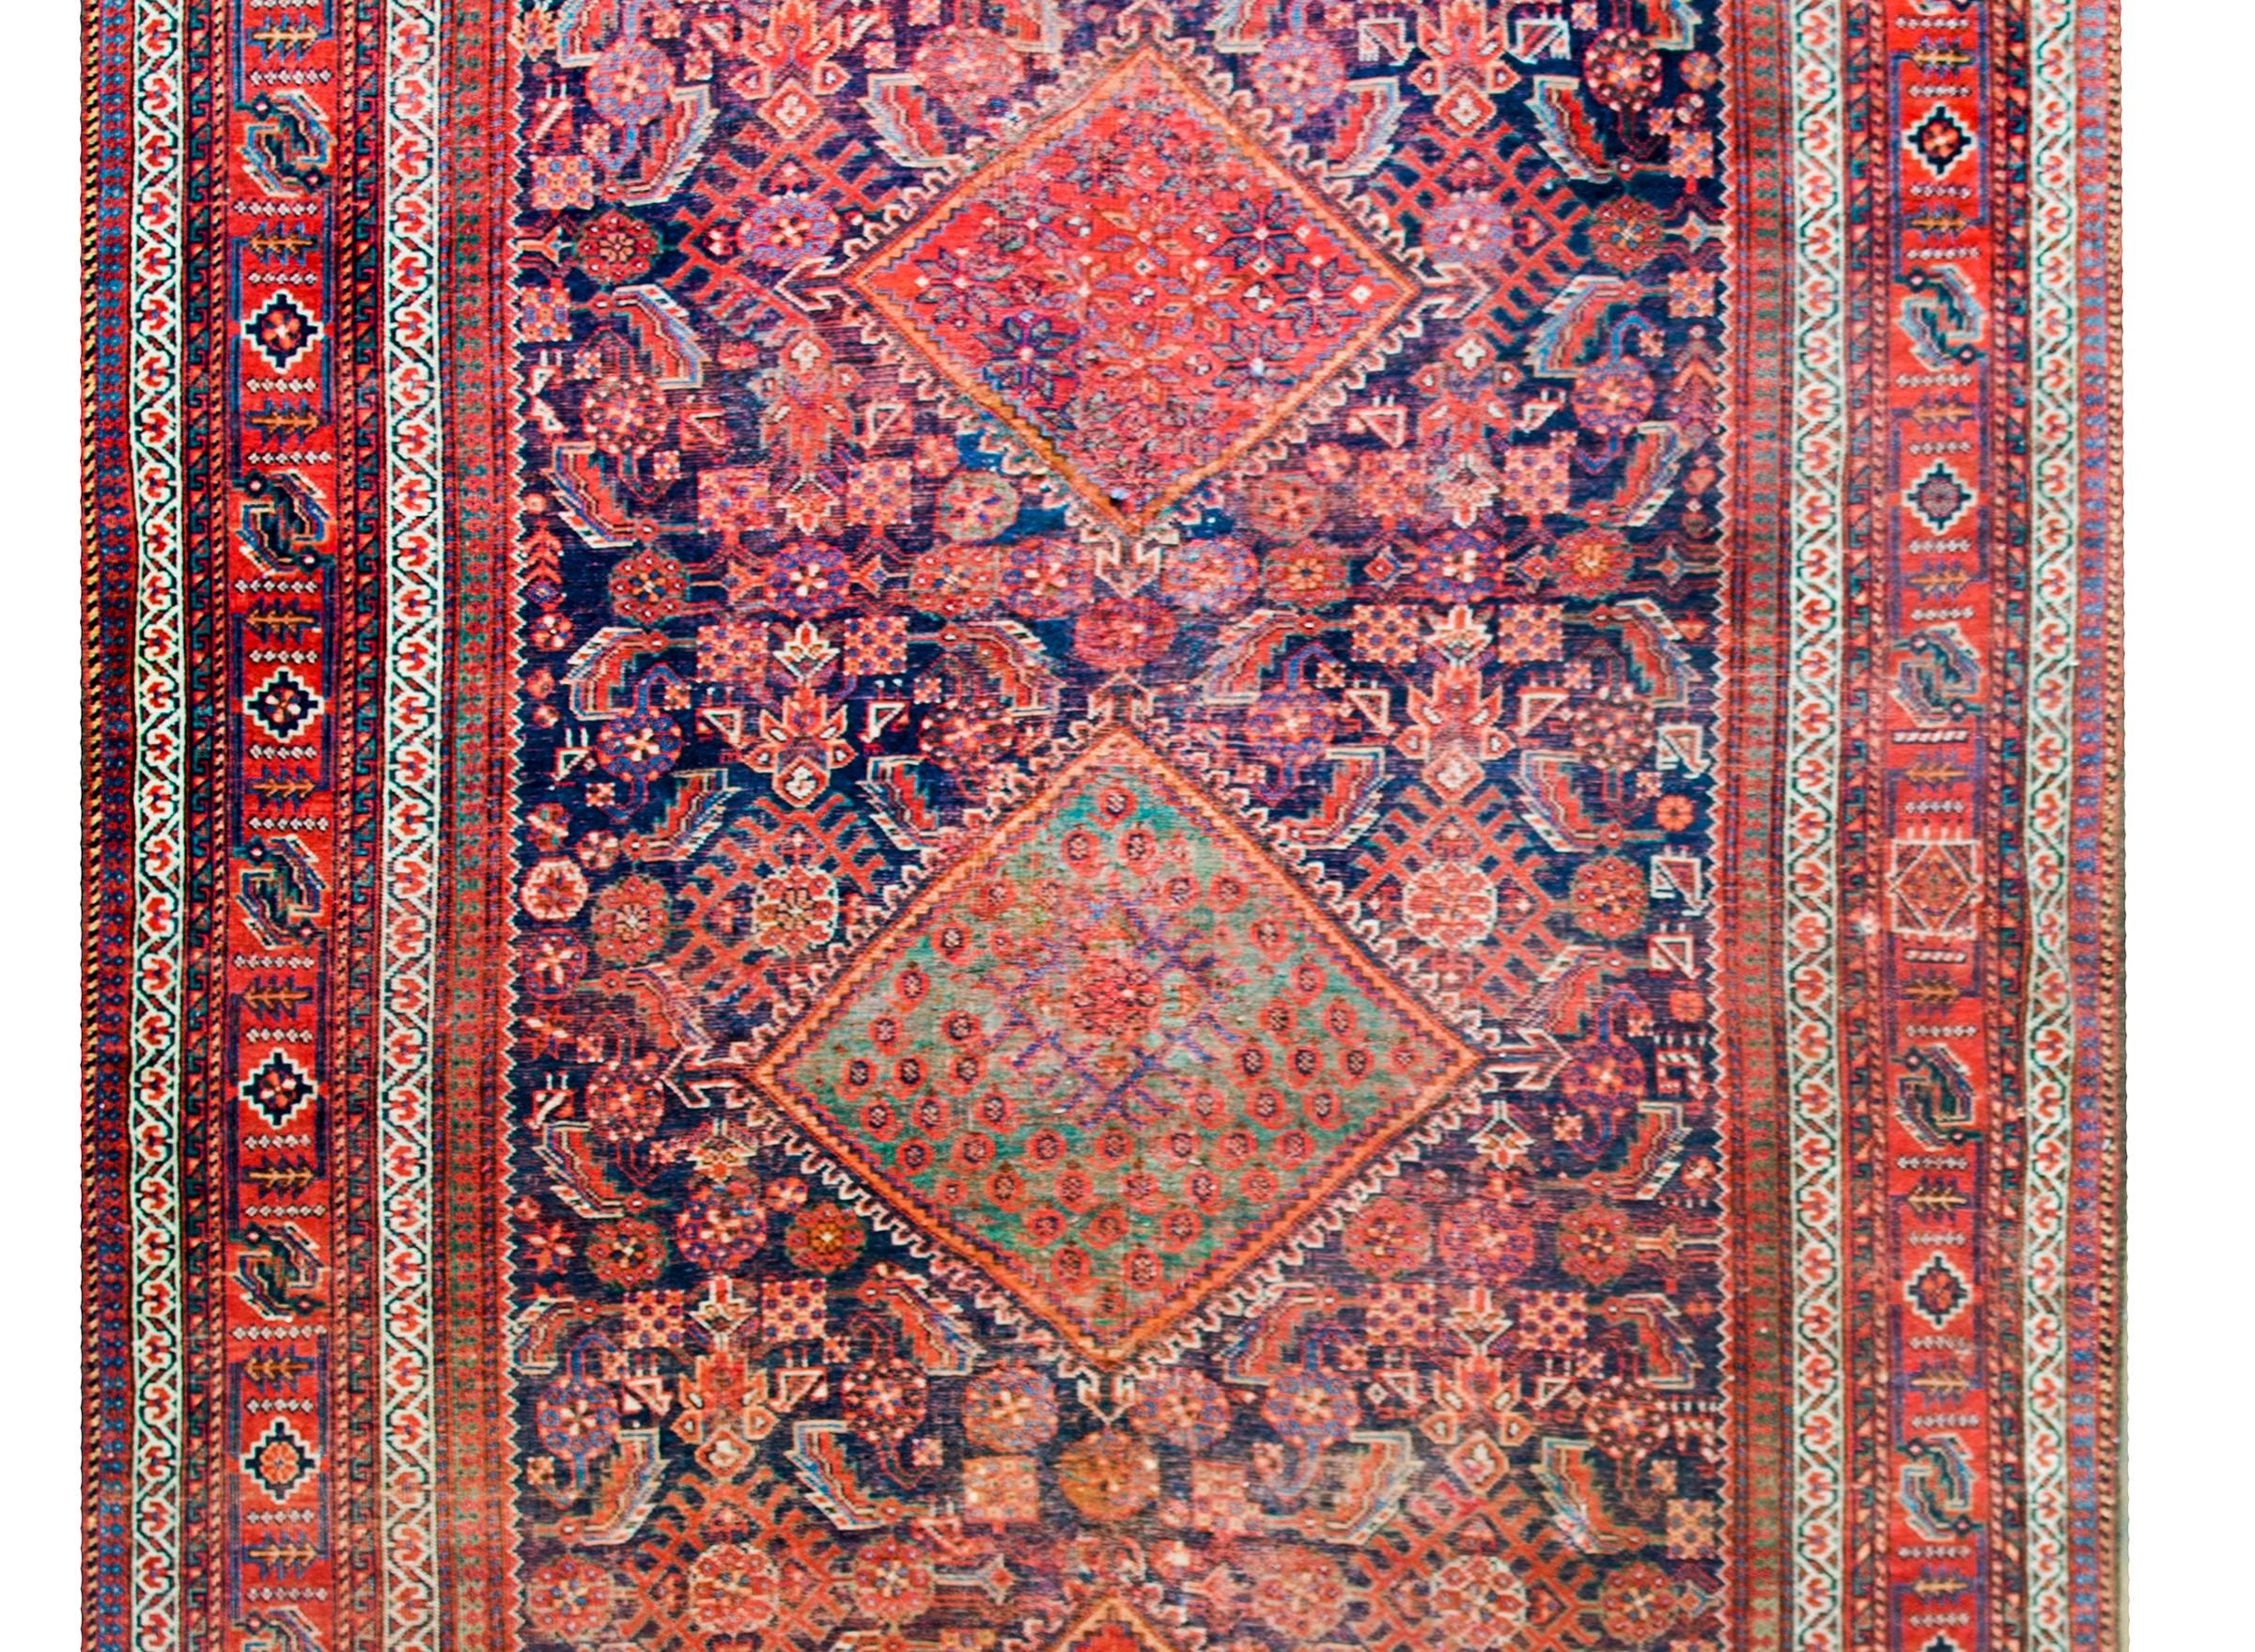 Ein atemberaubender persischer Afschar-Teppich aus dem frühen 20. Jahrhundert mit drei großen Rautenmedaillons, die inmitten eines Spalierfeldes mit stilisierten Blumen und Blättern schweben, umgeben von einer komplexen Bordüre, die mehrere breite